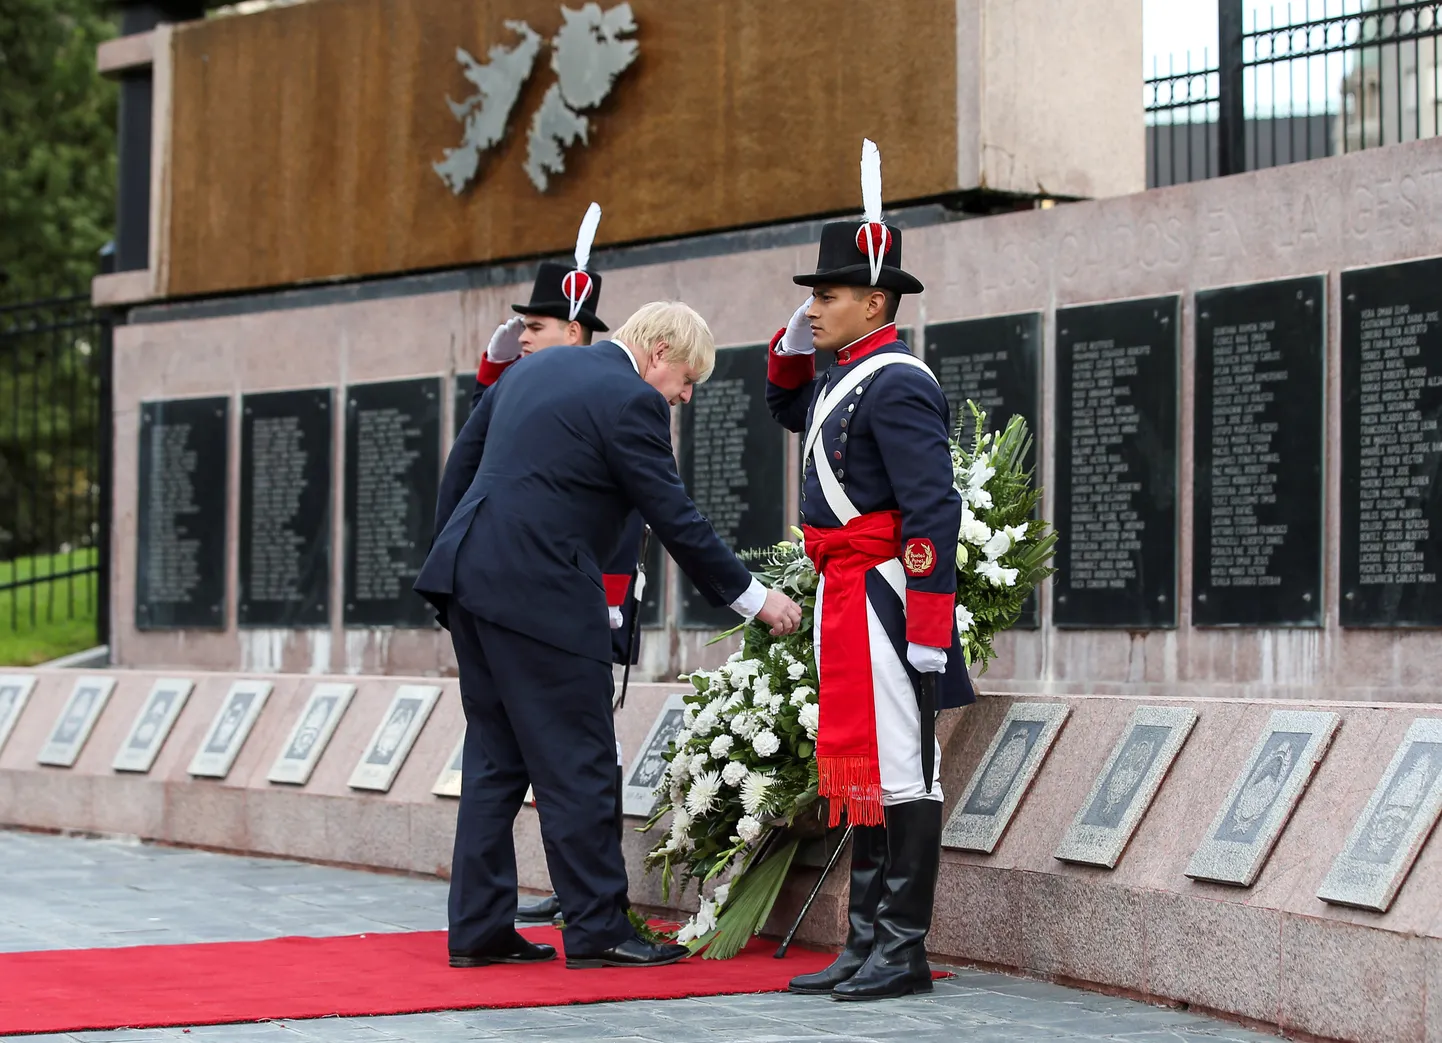 Briti välisminister Boris Johnson pani Buenos Aireses pärja 1982. aastal Falklandi sõjas hukkunud Argentina sõjaväelaste mälestusmärgile.